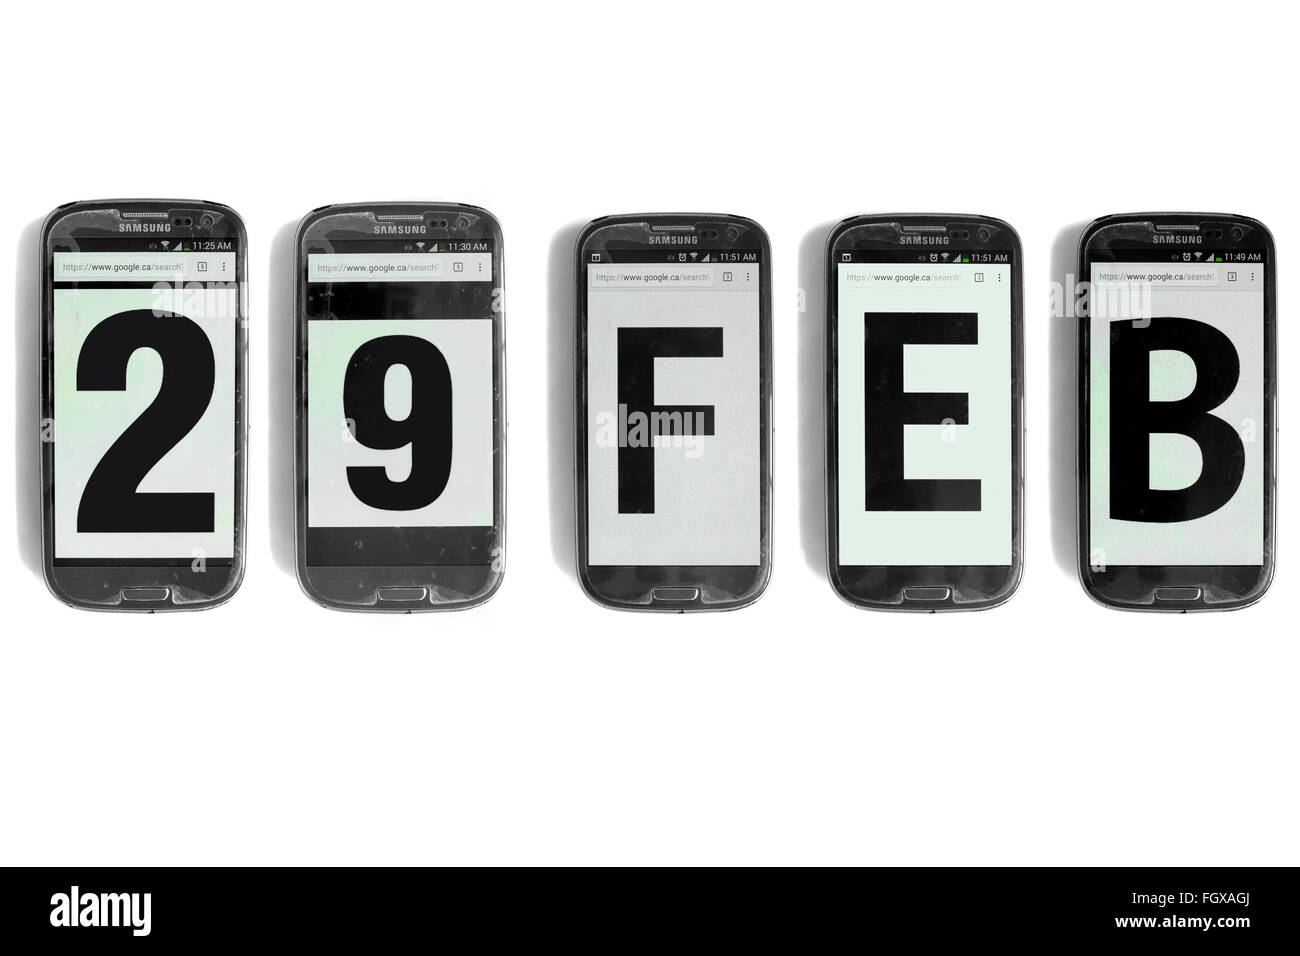 29 feb scritto su schermi di smartphone fotografati contro uno sfondo bianco. Foto Stock